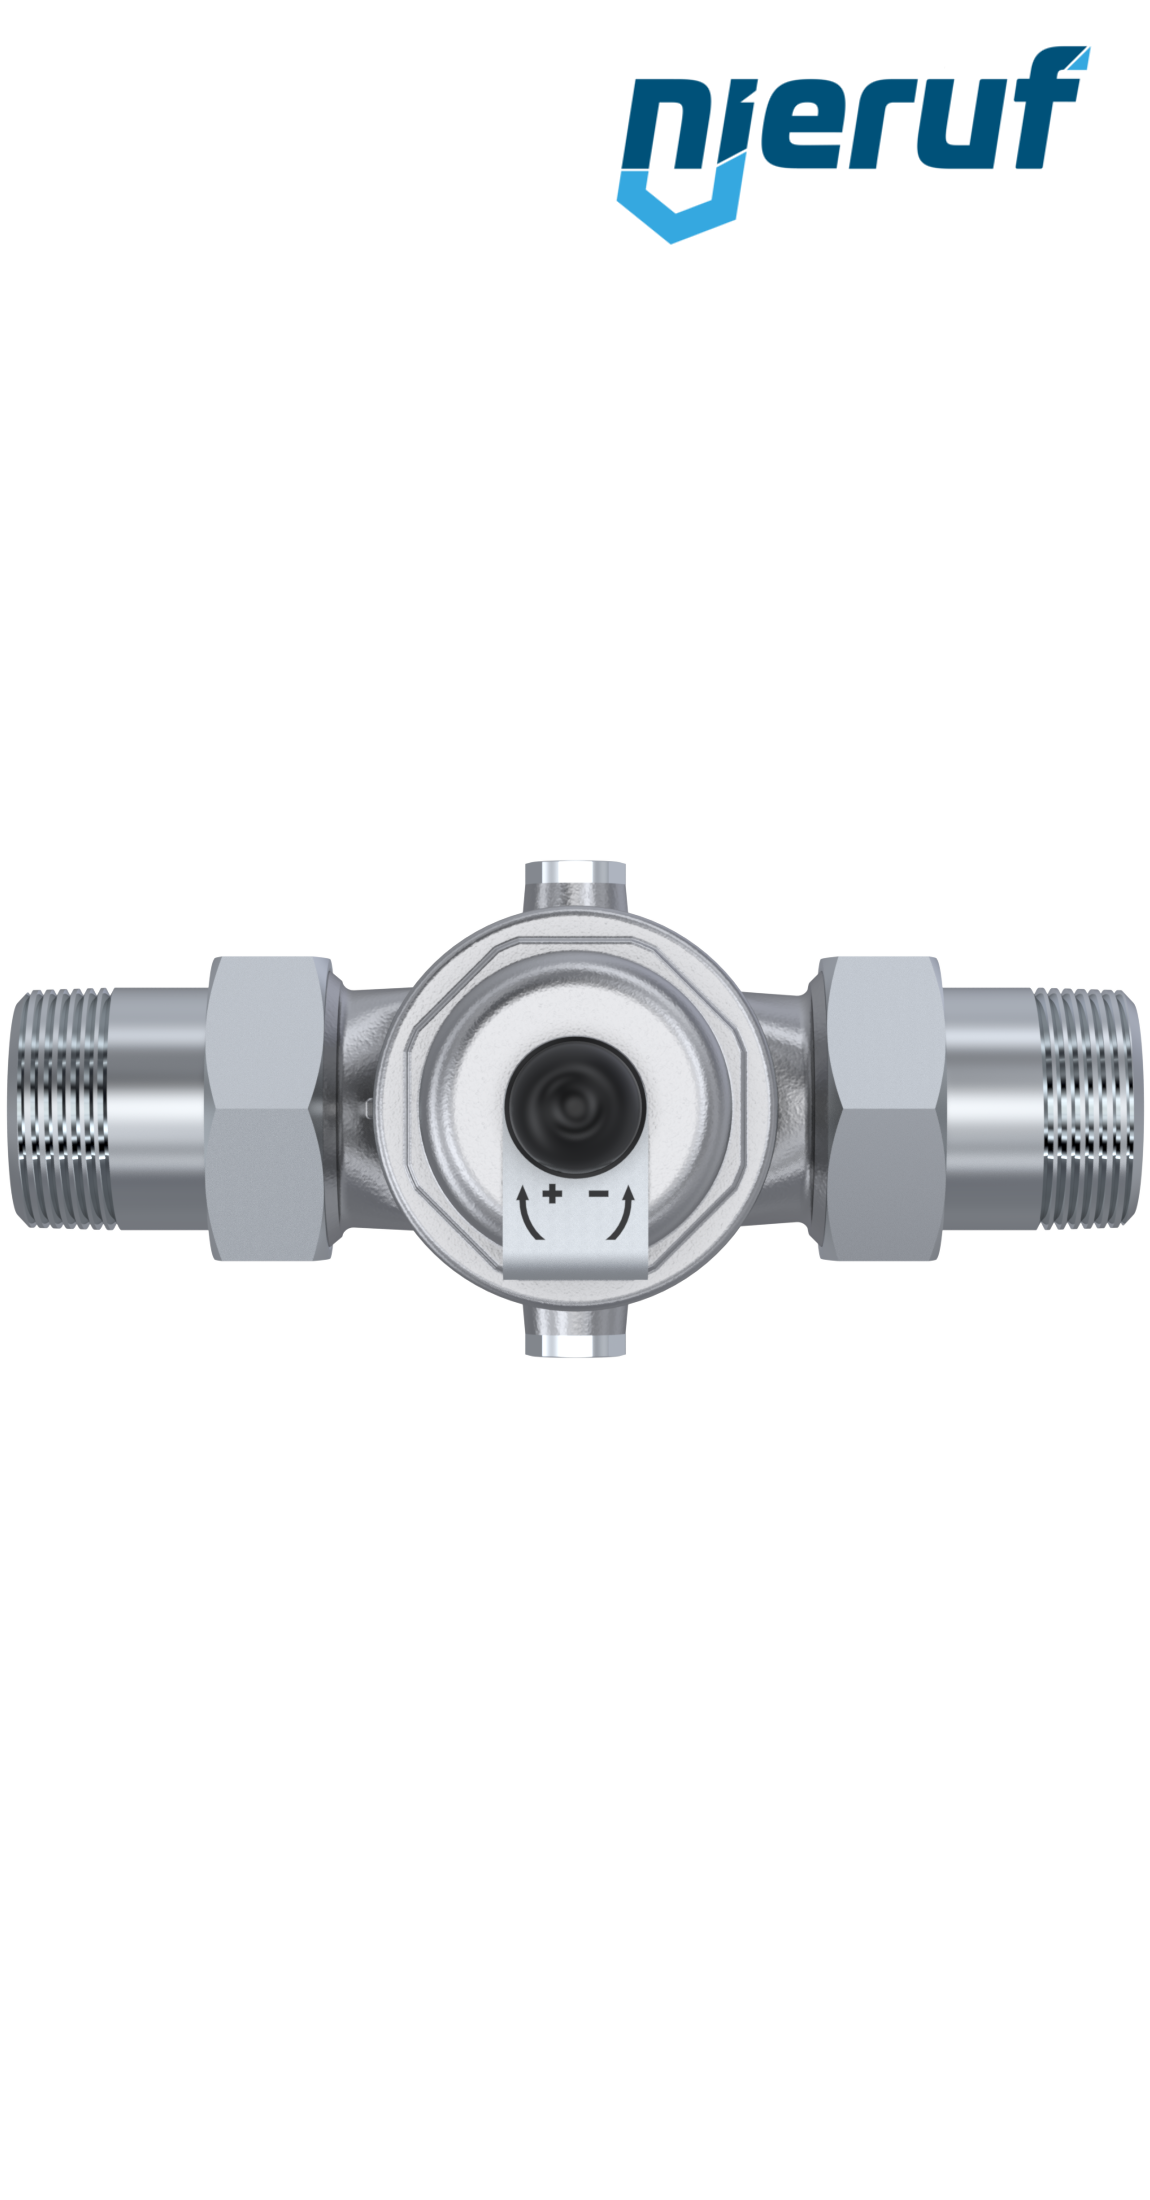 pressure reducing valve 1 1/4" inch male thread DM04 stainless steel FKM 1.0 - 8.0 bar